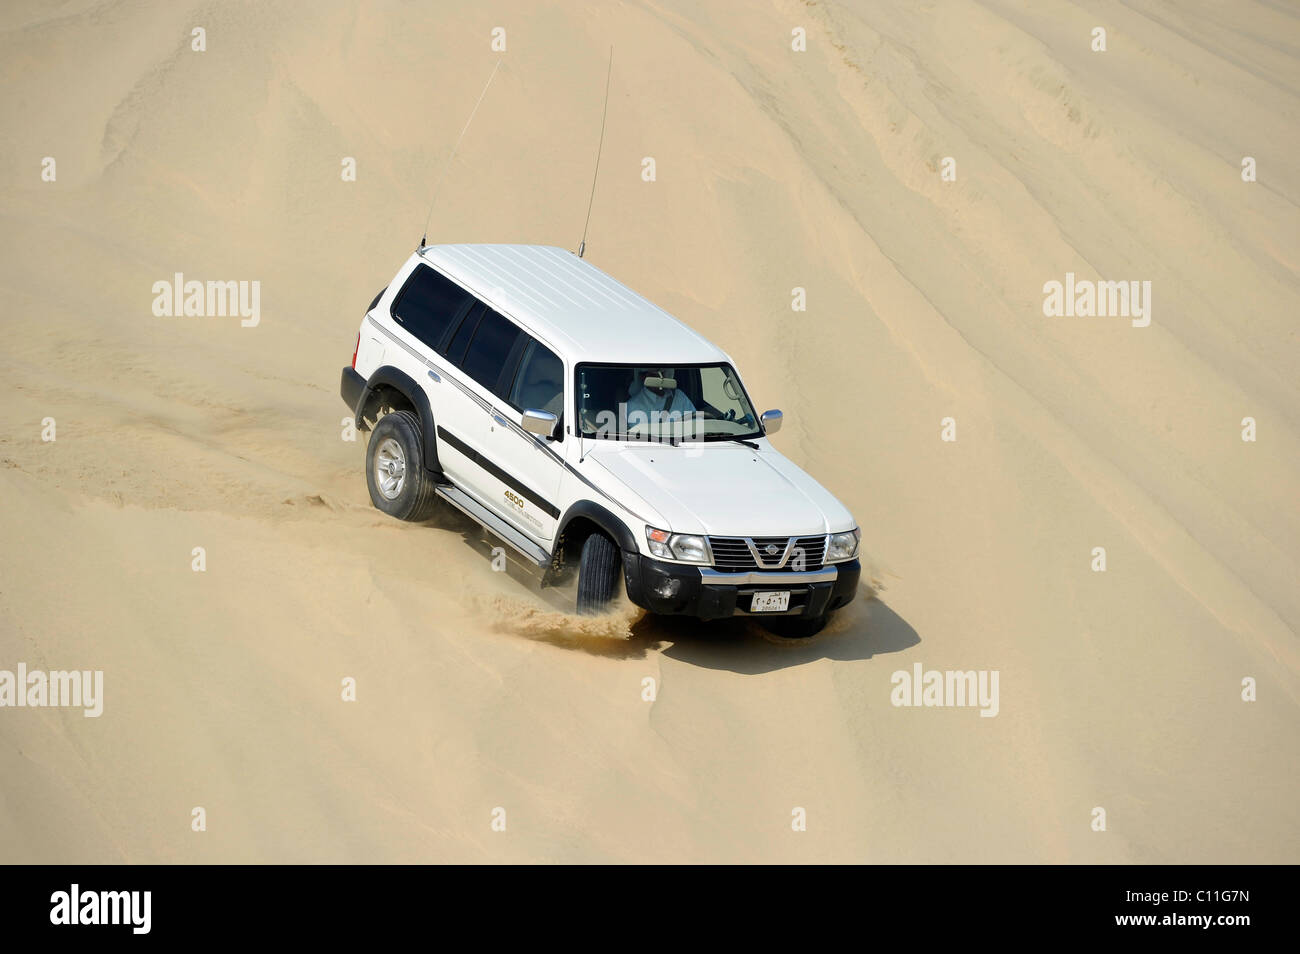 Off-Roader Nissan Patrol 4500 Fuel Injection 4 x 4, fahren in Sanddünen, Emirat Katar, Persischer Golf, mittleren Osten, Asien Stockfoto